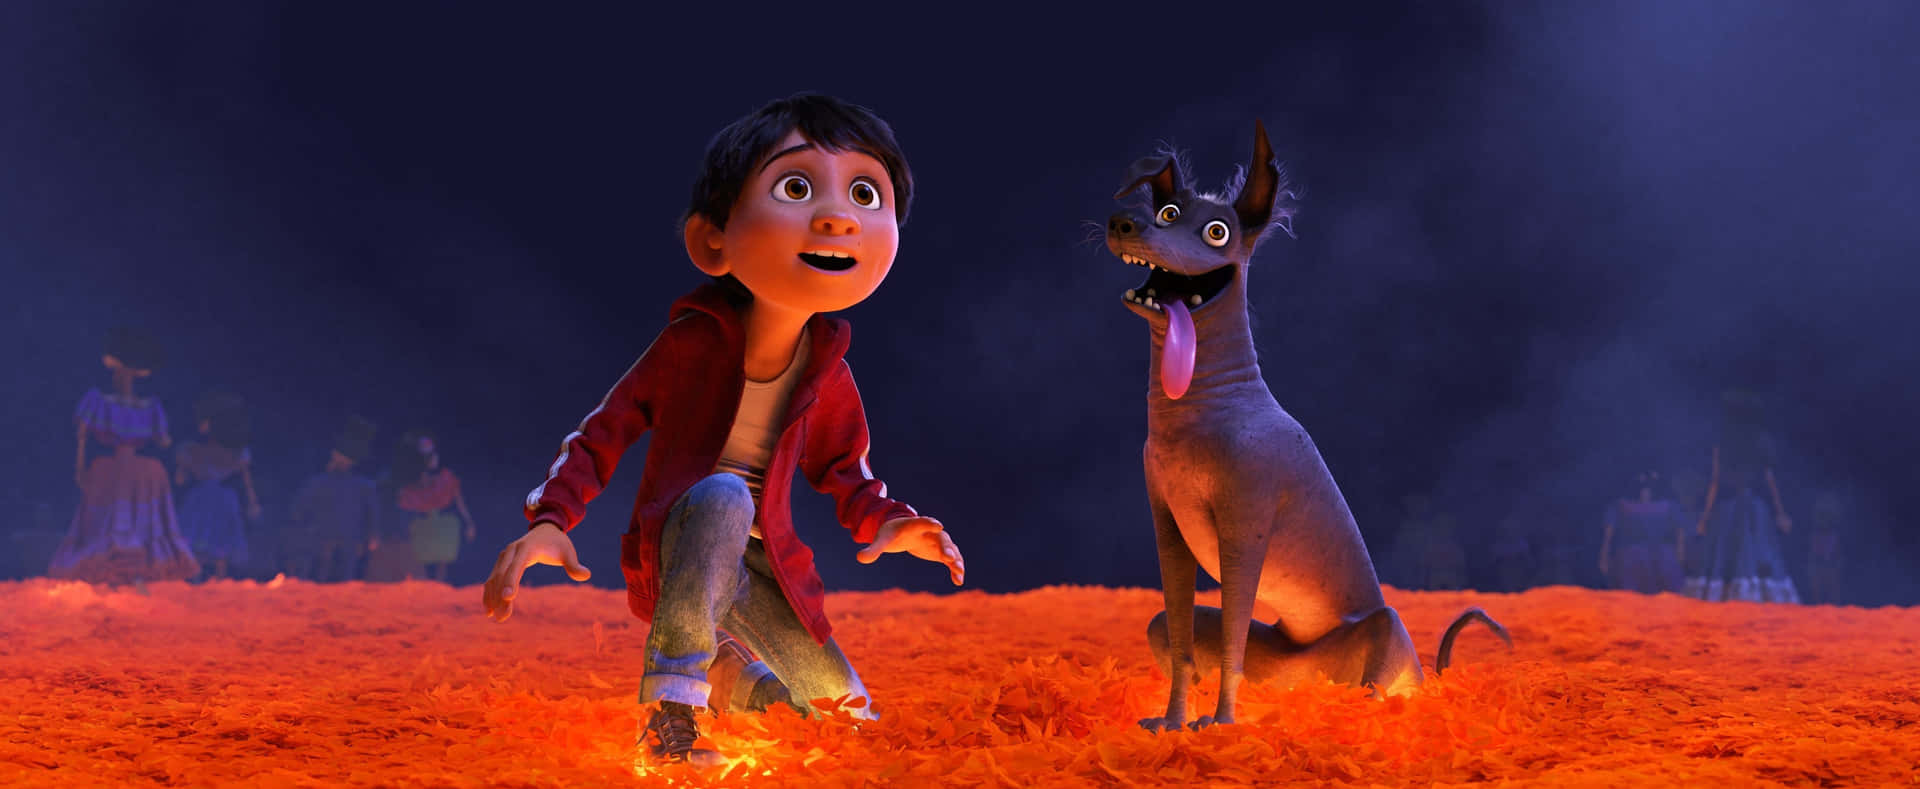 Únetea Miguel Y Sus Amigos En Esta Inolvidable Aventura En La Película Animada De Disney-pixar, Coco. Fondo de pantalla